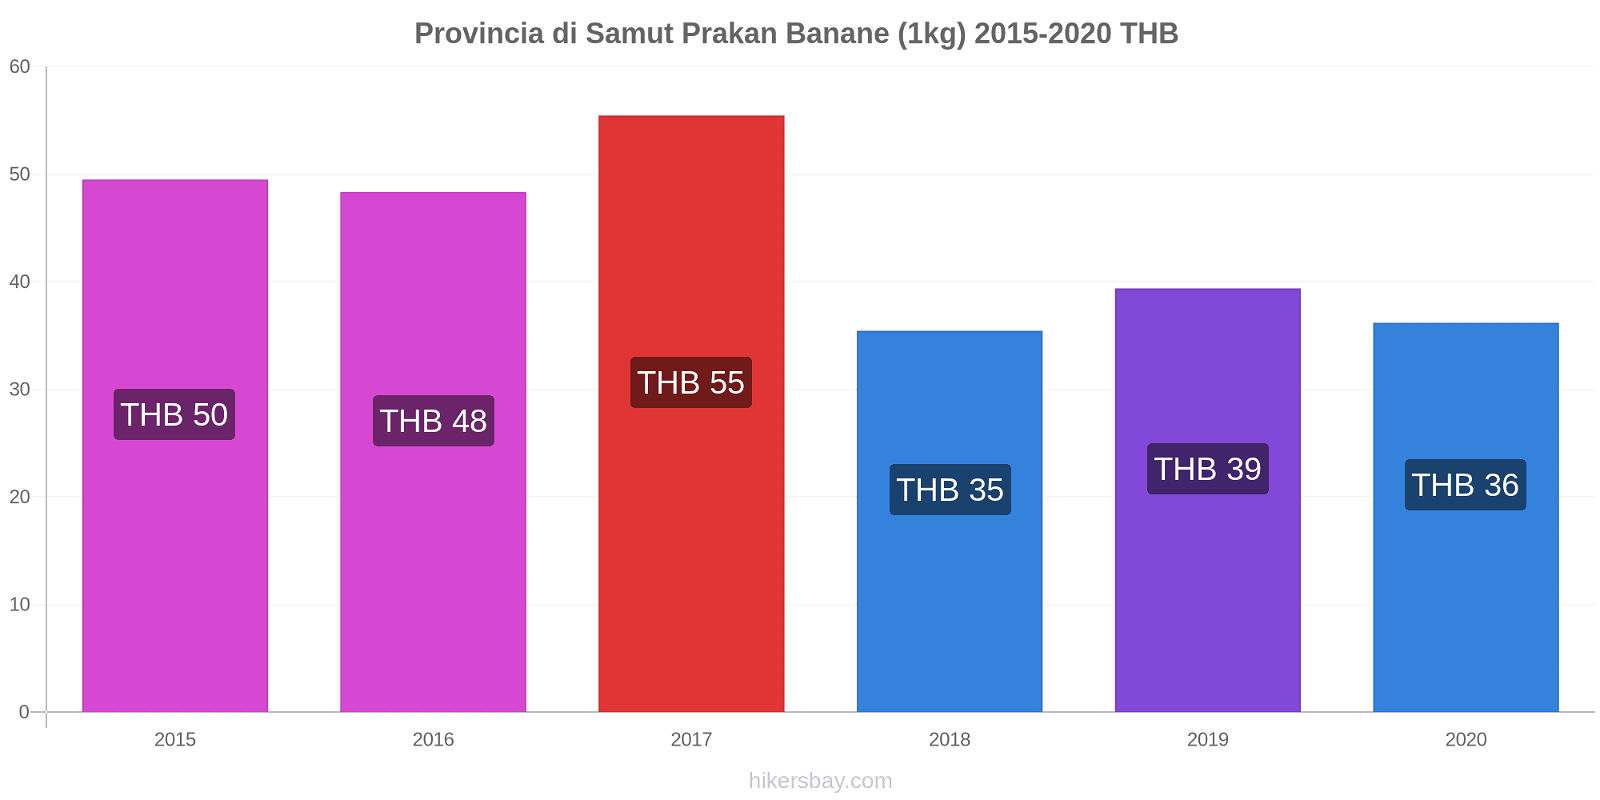 Provincia di Samut Prakan variazioni di prezzo Banana (1kg) hikersbay.com